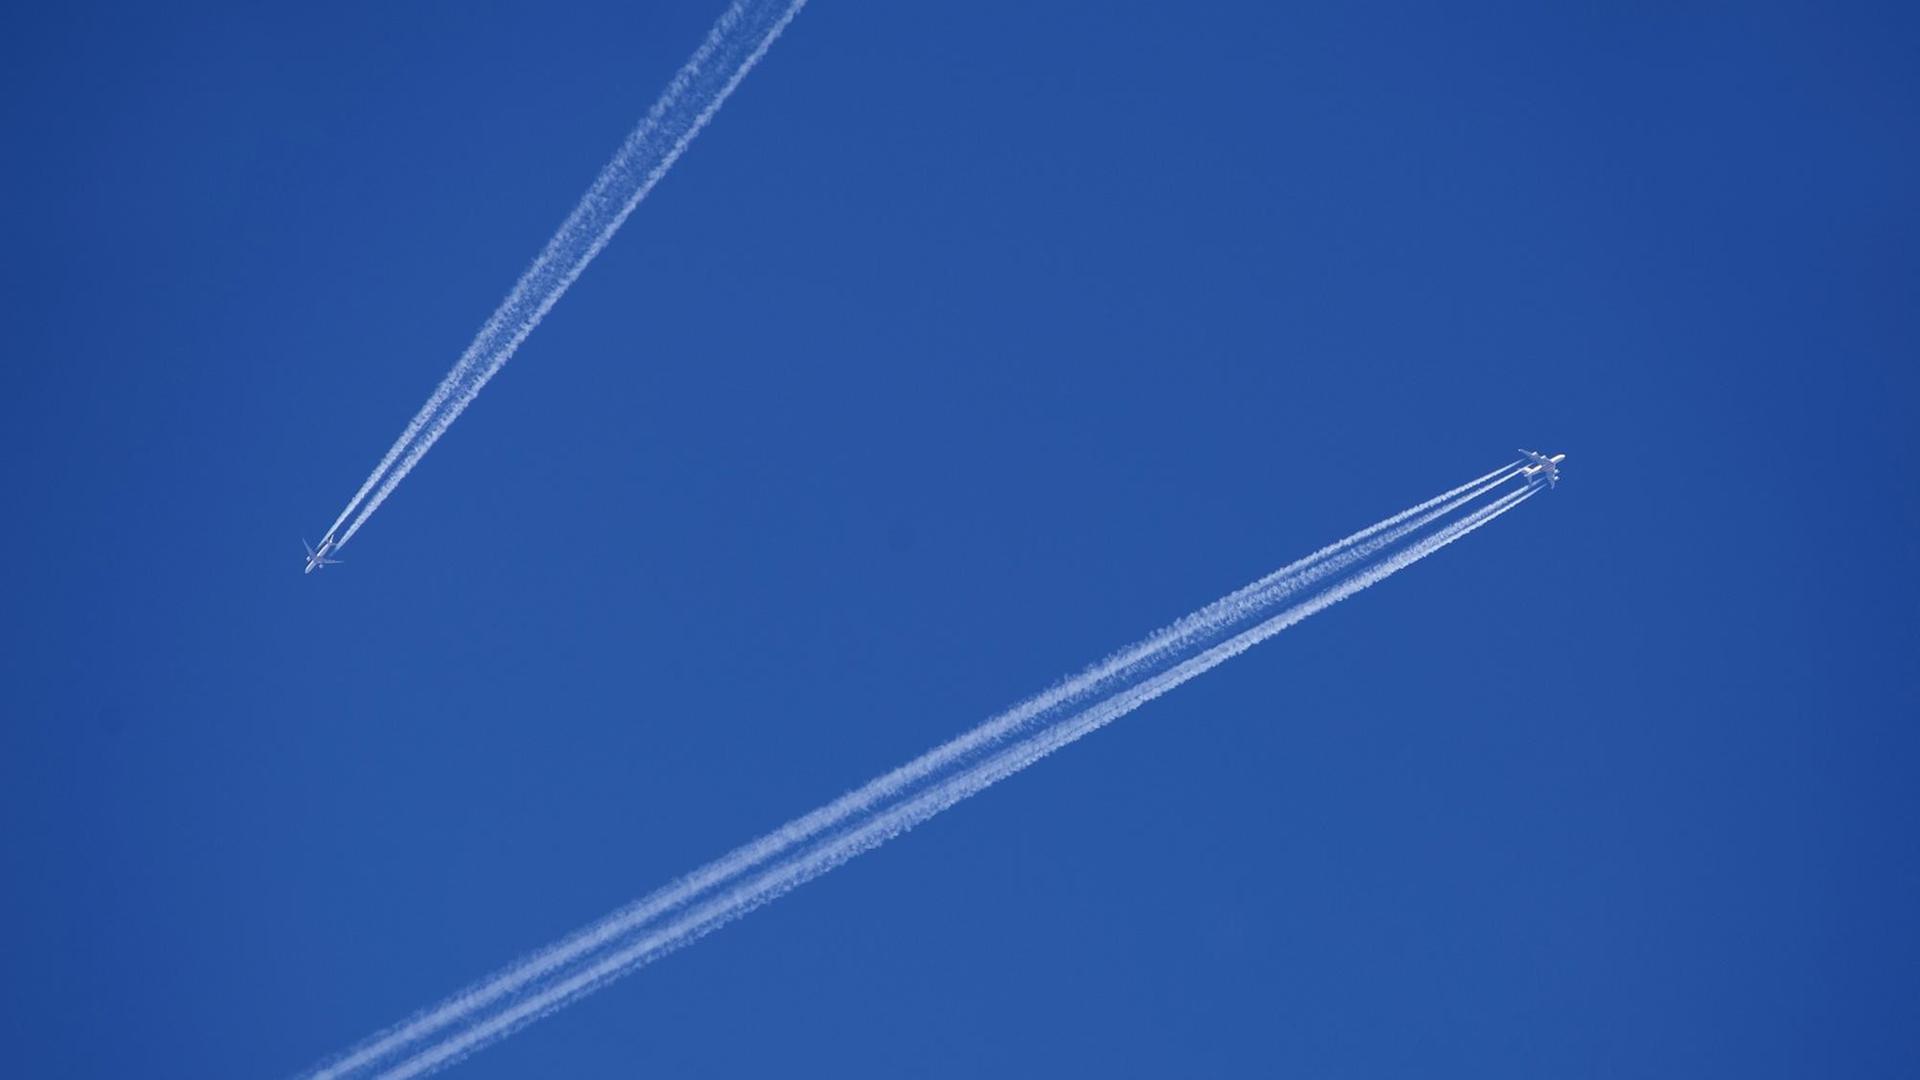 Zwei Flugzeuge mit Kondensstreifen am blauen Himmel.